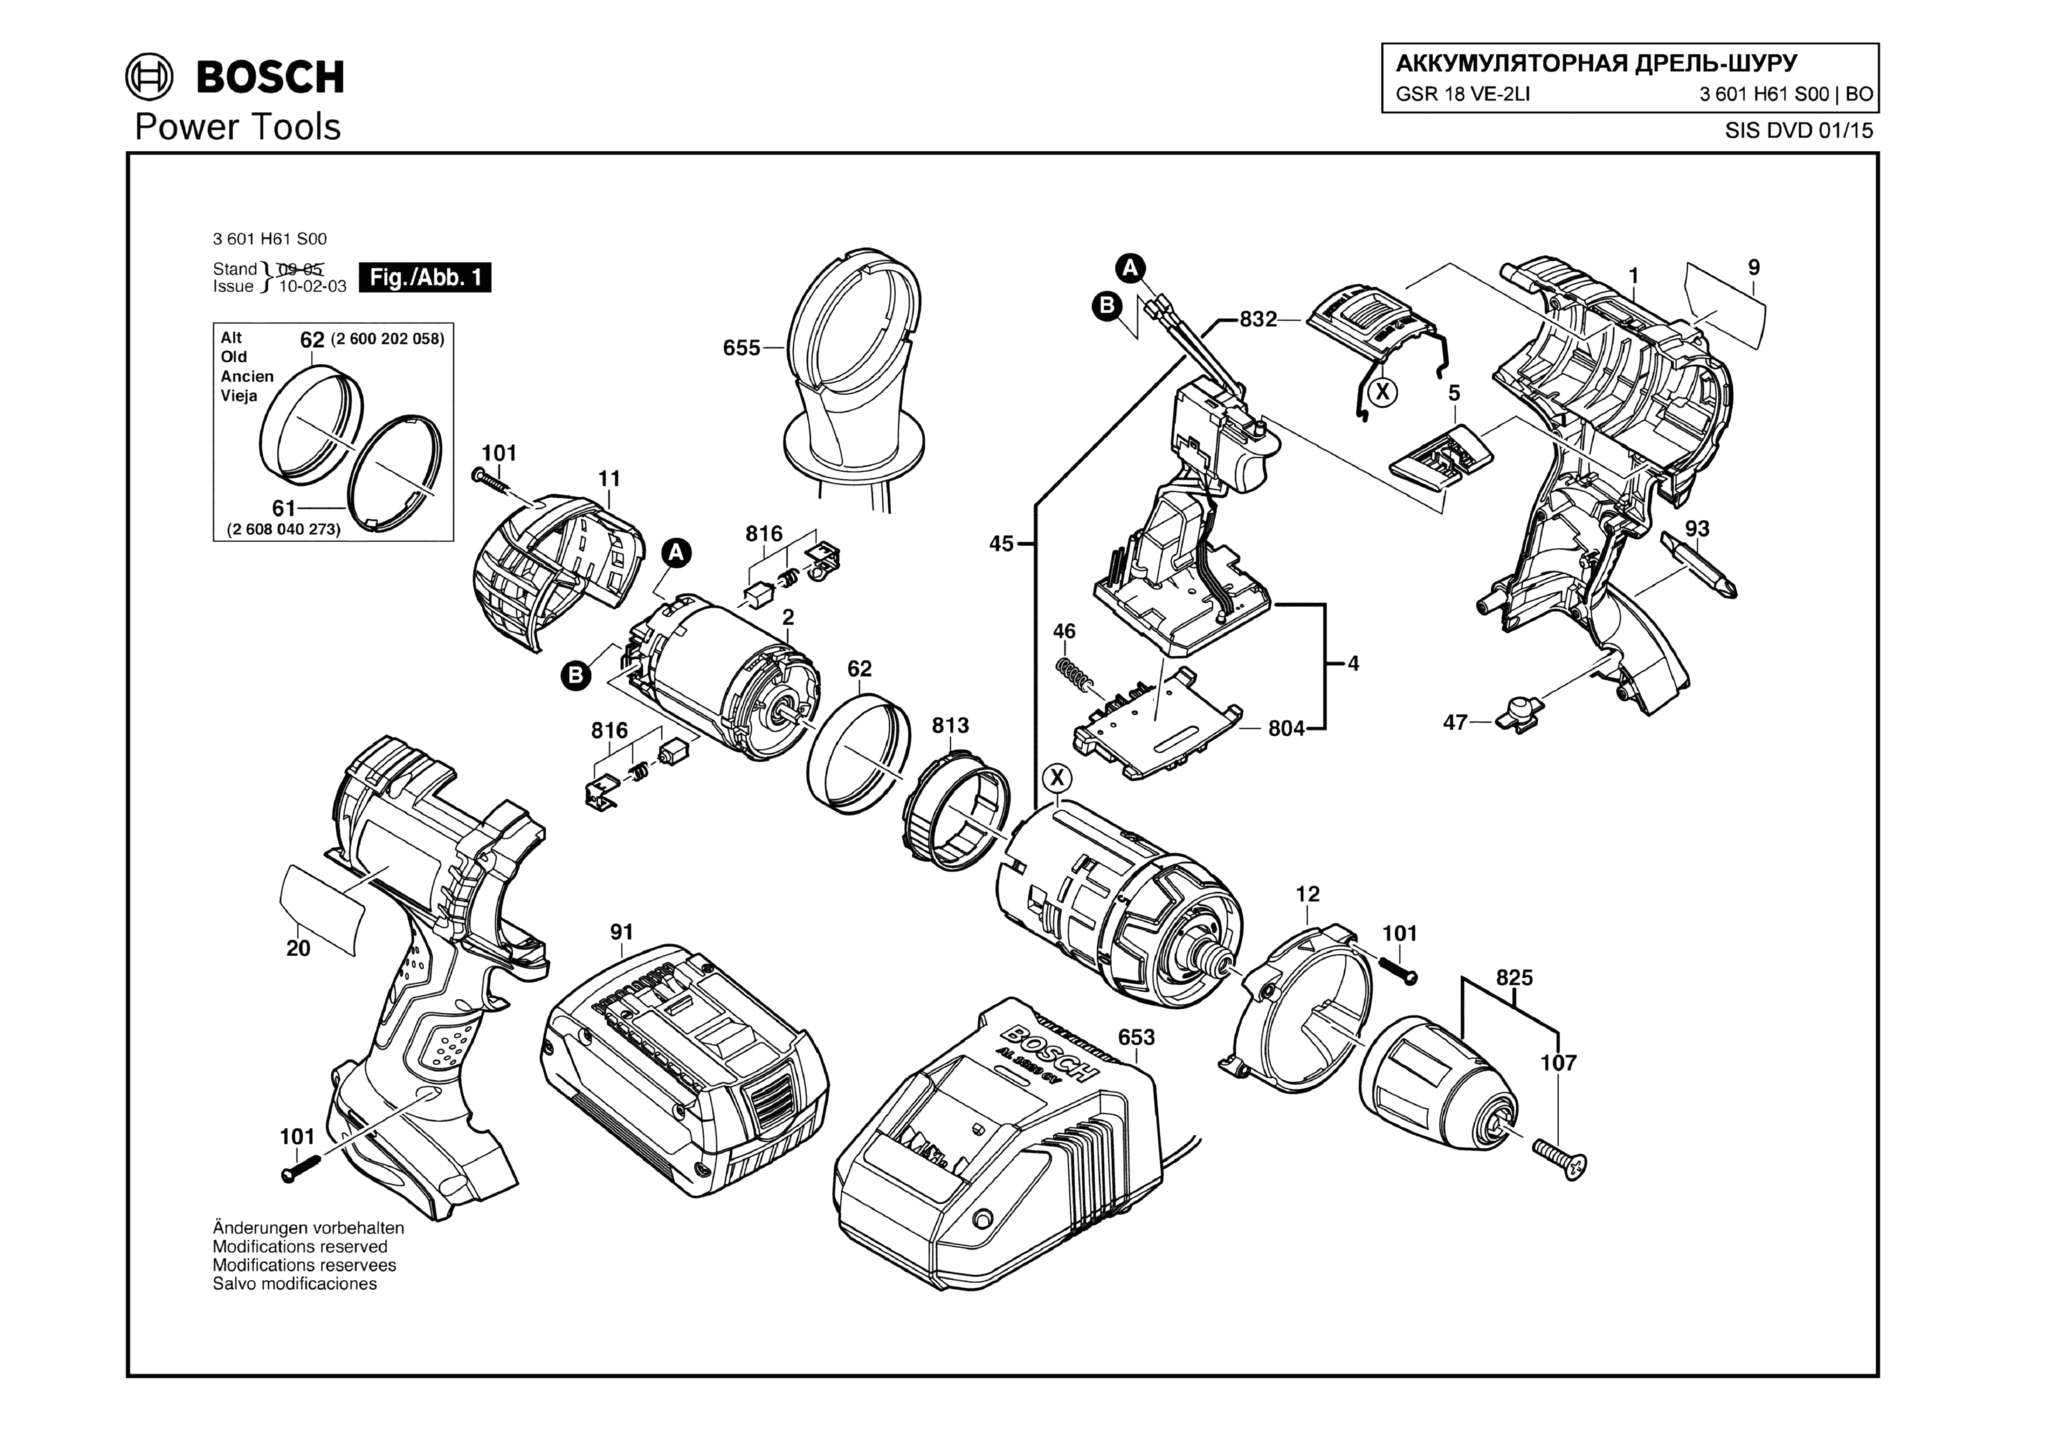 Запчасти, схема и деталировка Bosch GSR 18 VE-2-LI (ТИП 3601H61S00)